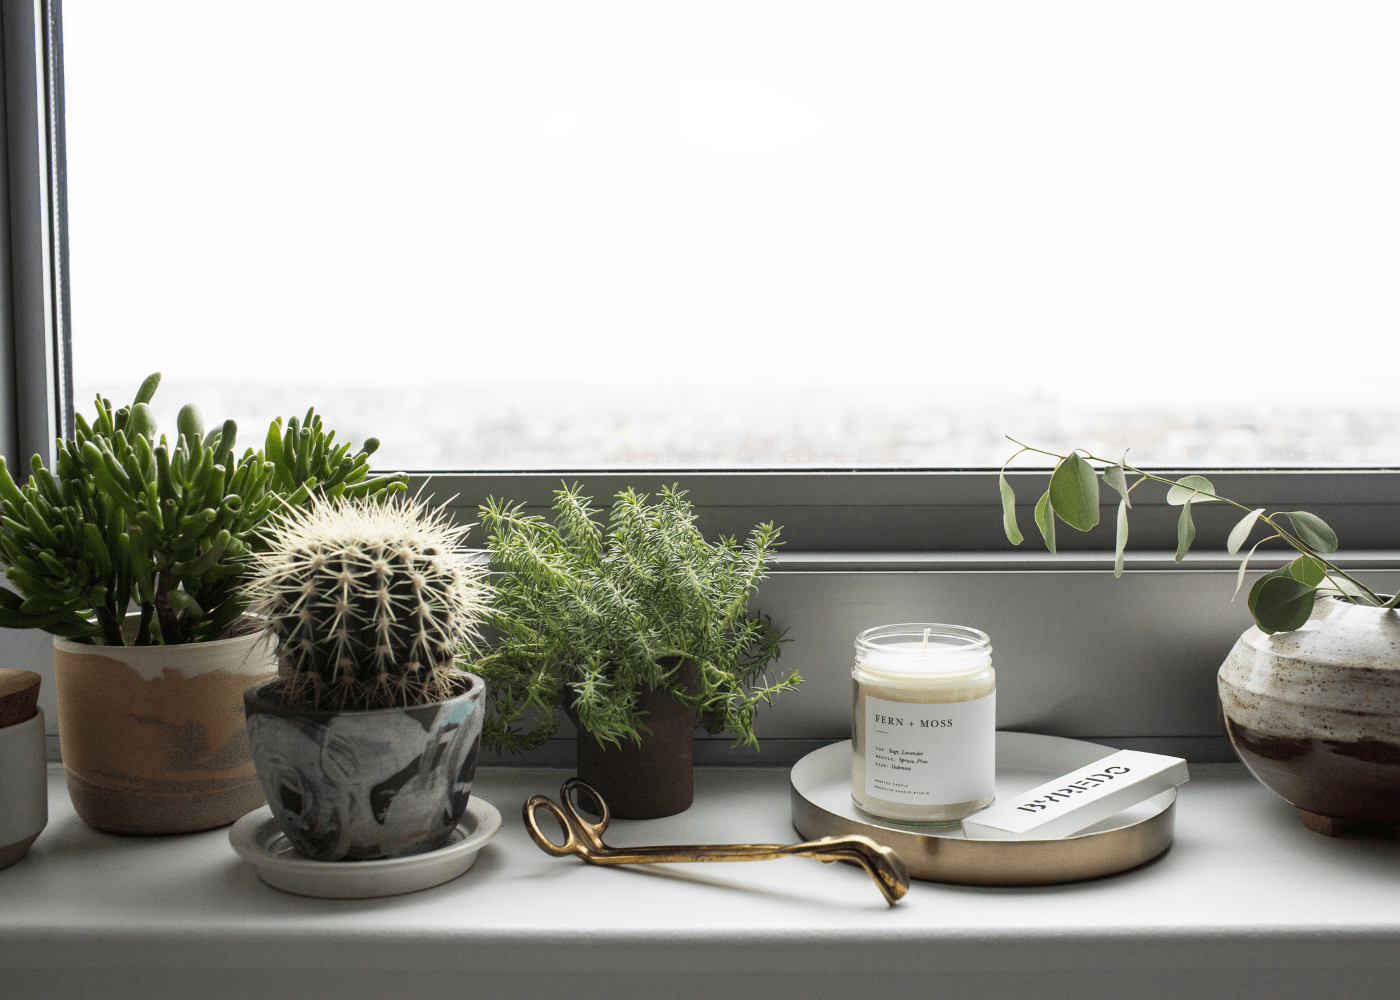 Brooklyn Candle Studio Duftkerze Fern + Moss Moodfoto mit Pflanzen auf Fensterbank. Handgegossen aus 100% Sojawachs.